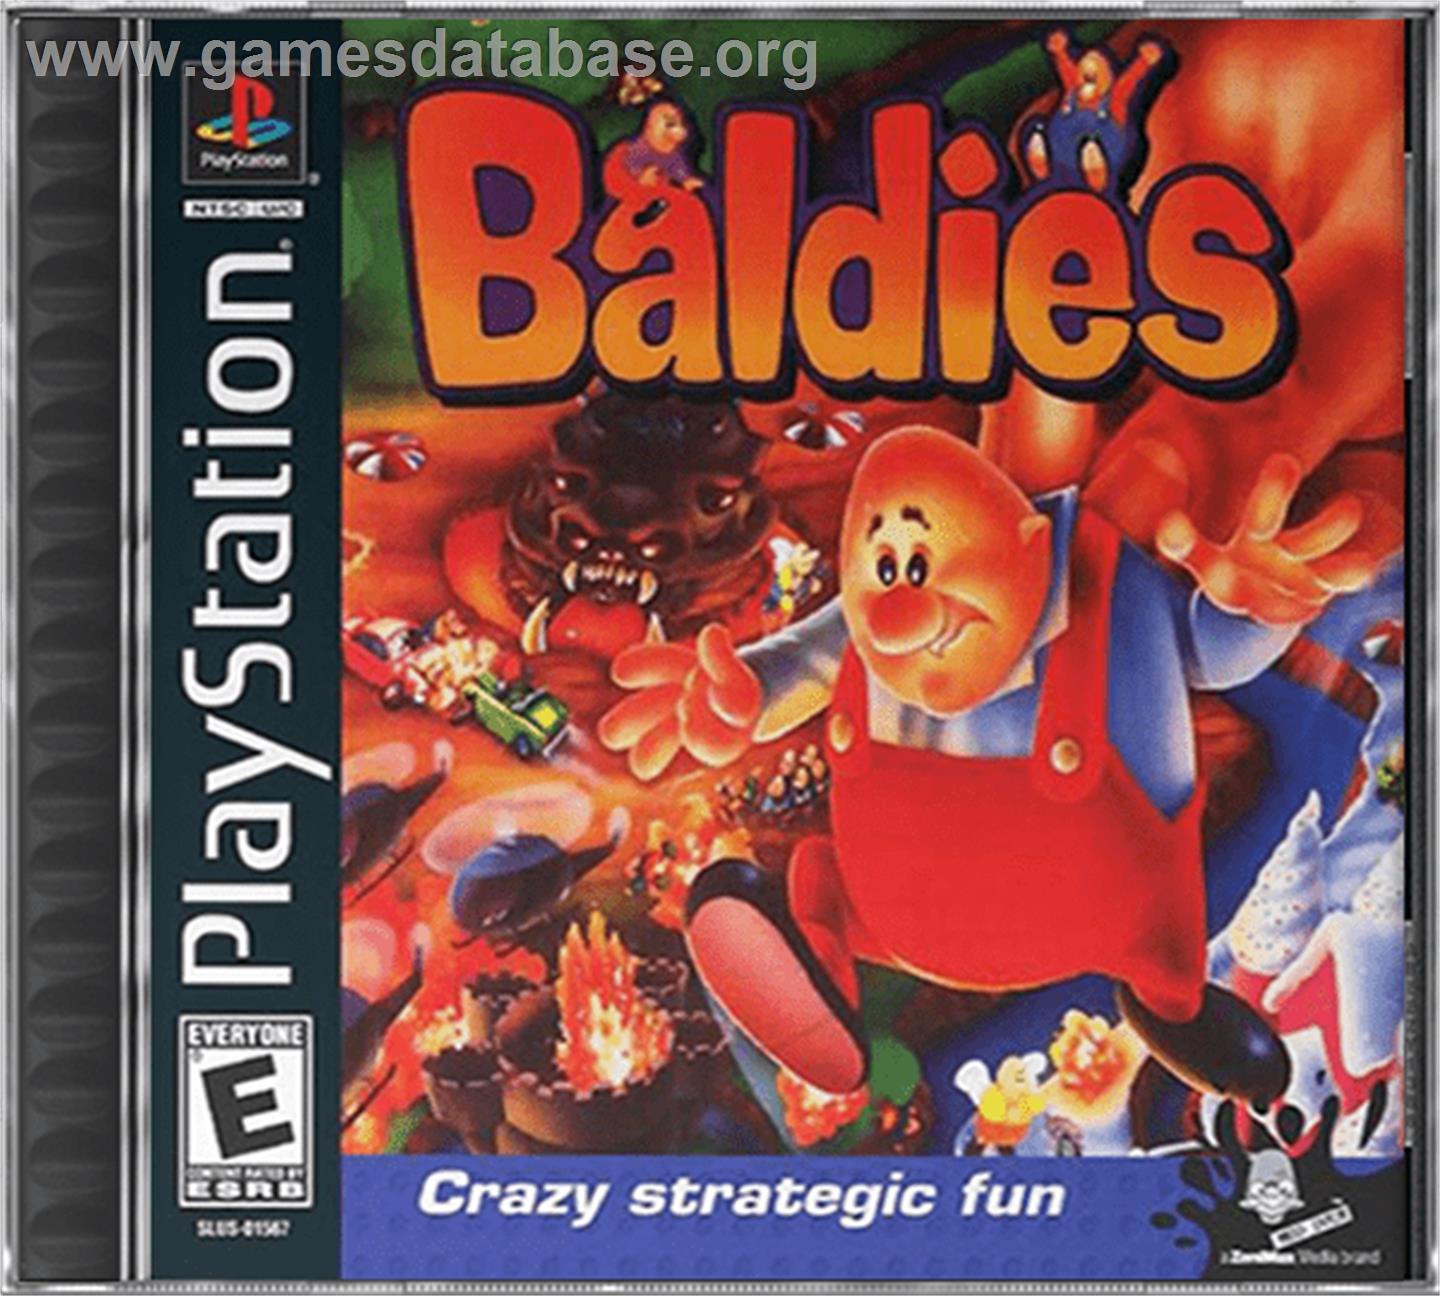 Baldies - Sony Playstation - Artwork - Box